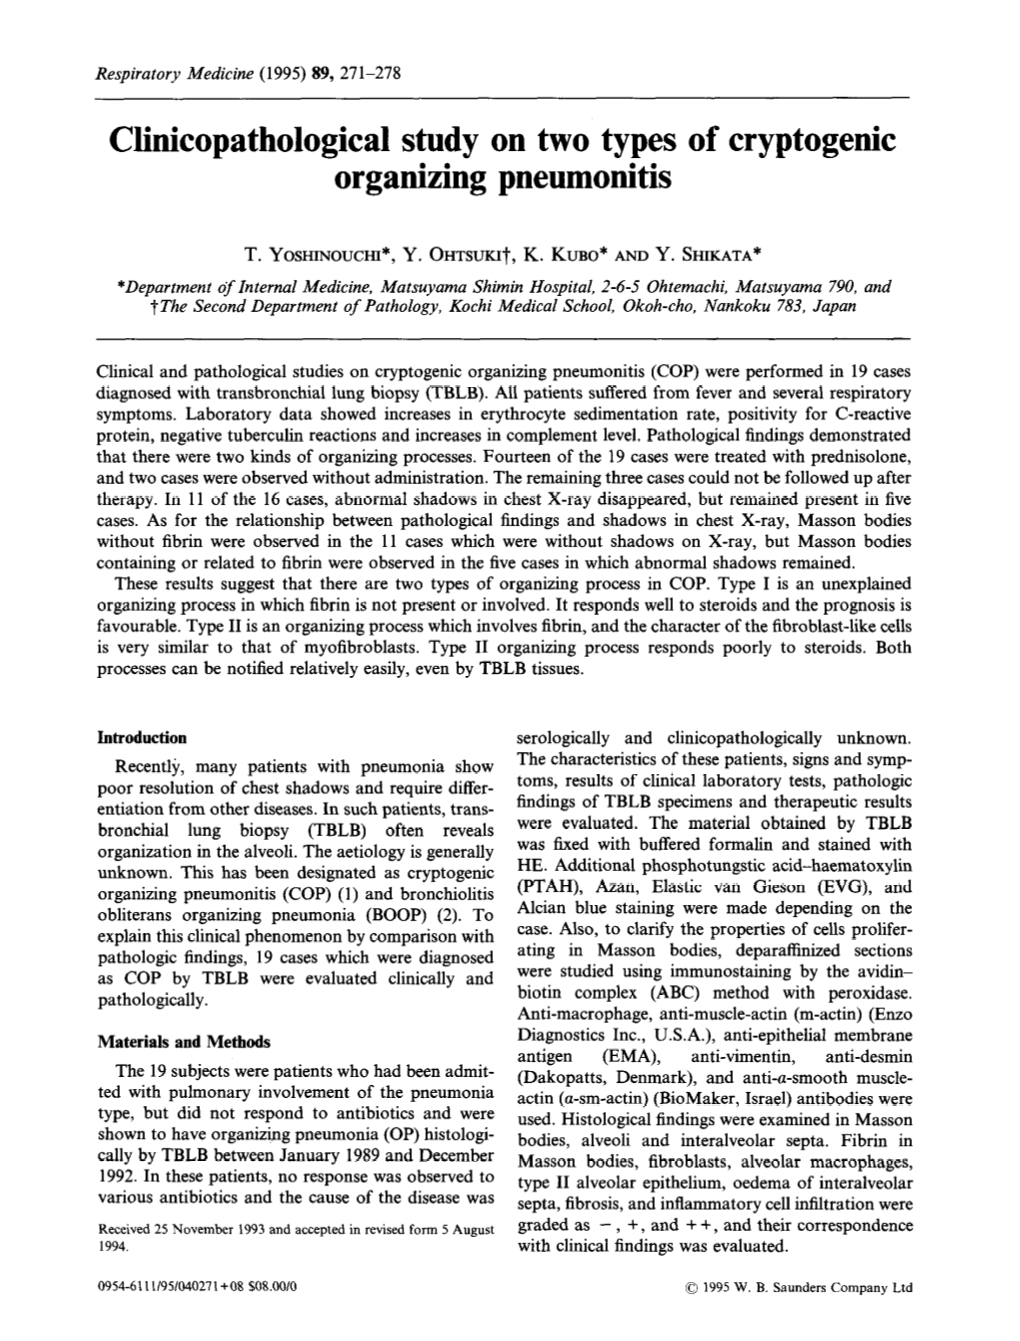 Clinicopathological Study on Two Types of Cryptogenic Organizing Pneumonitis